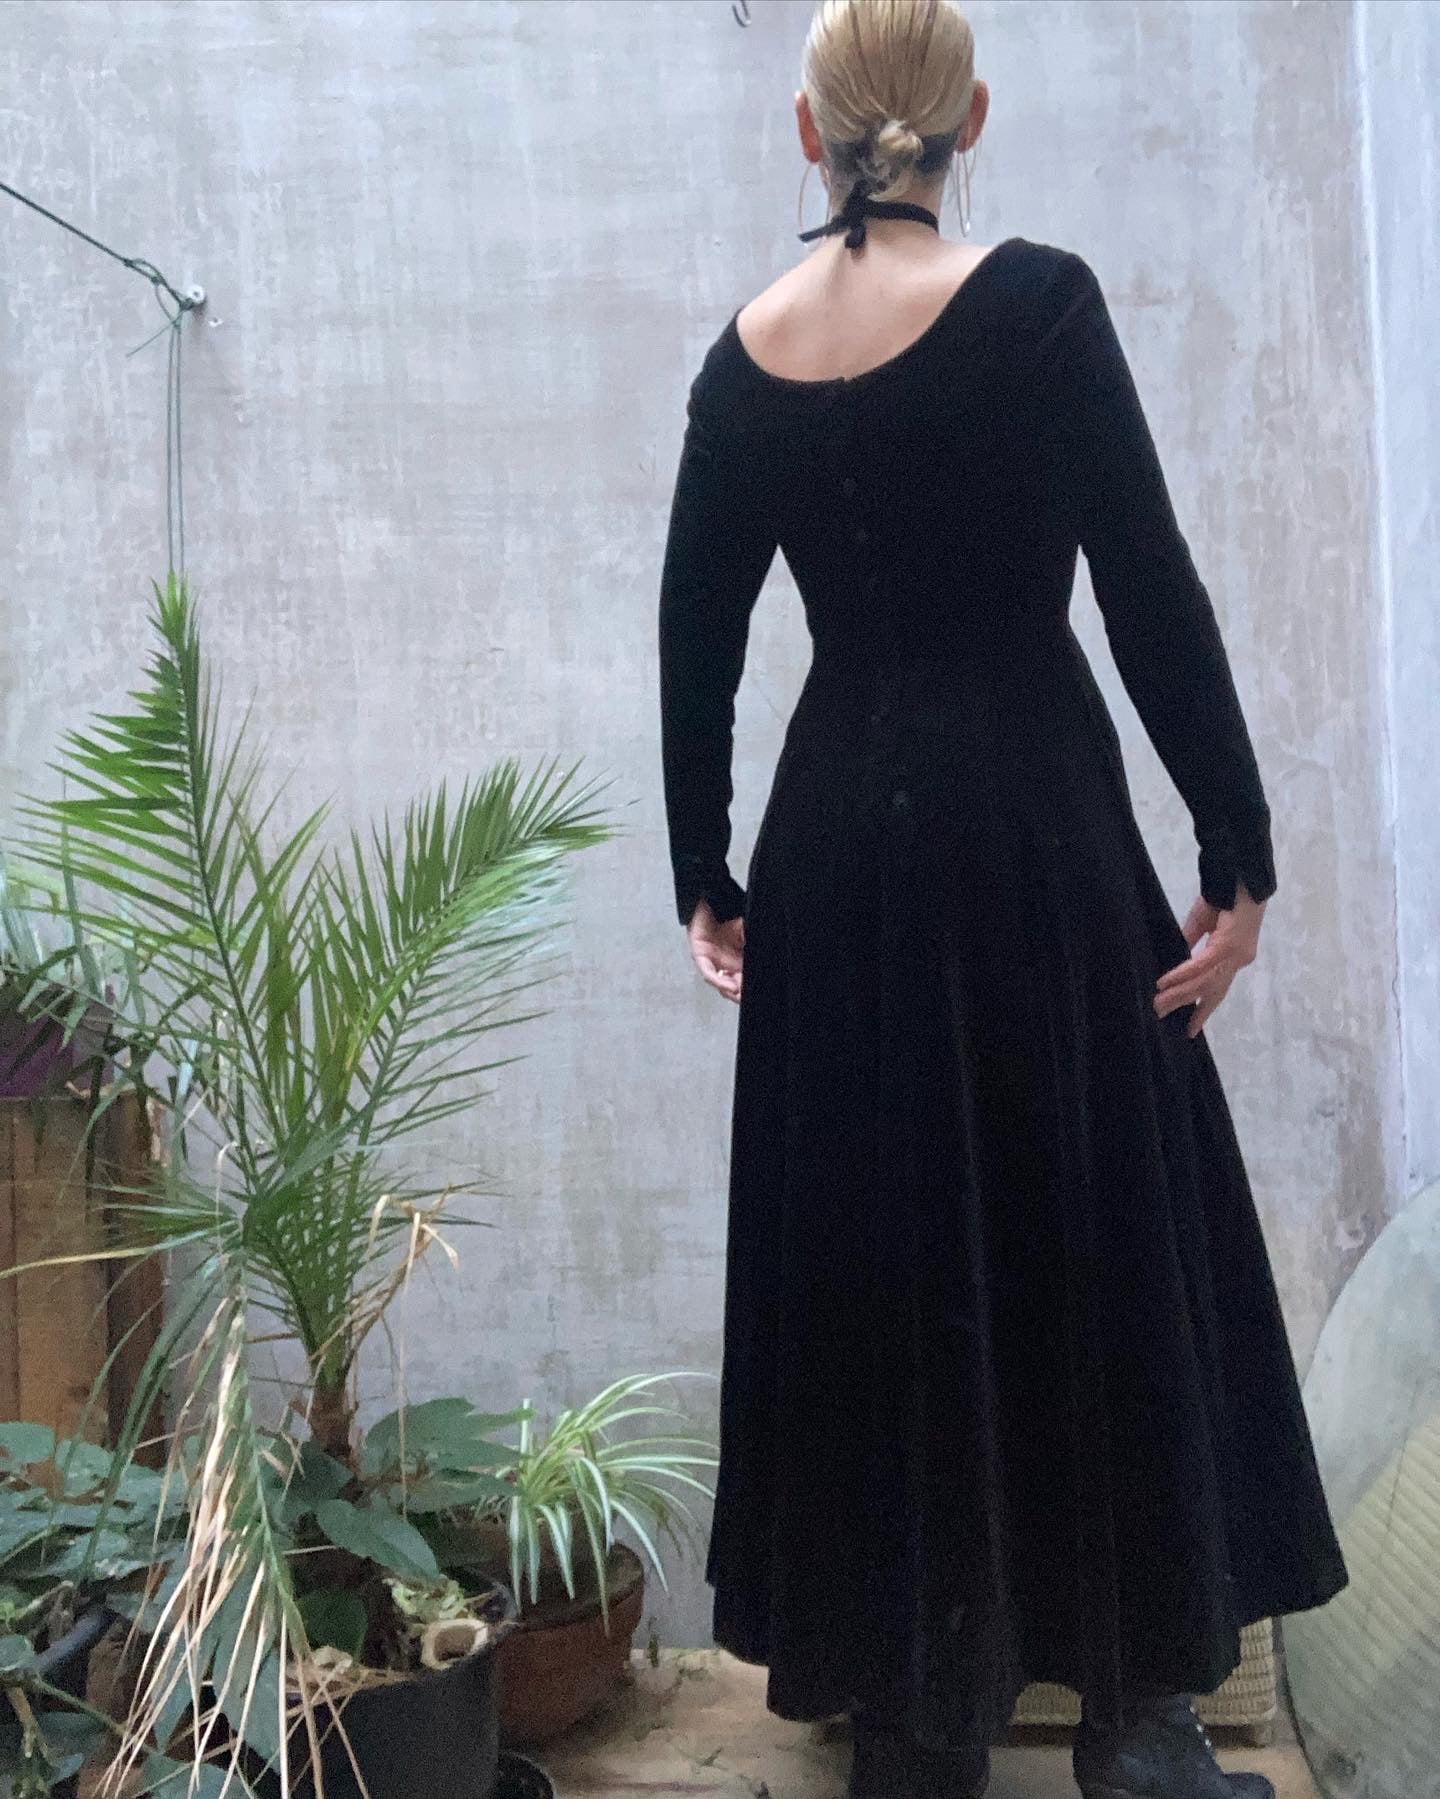 Robe velour noir - Laura Ashley - 1980